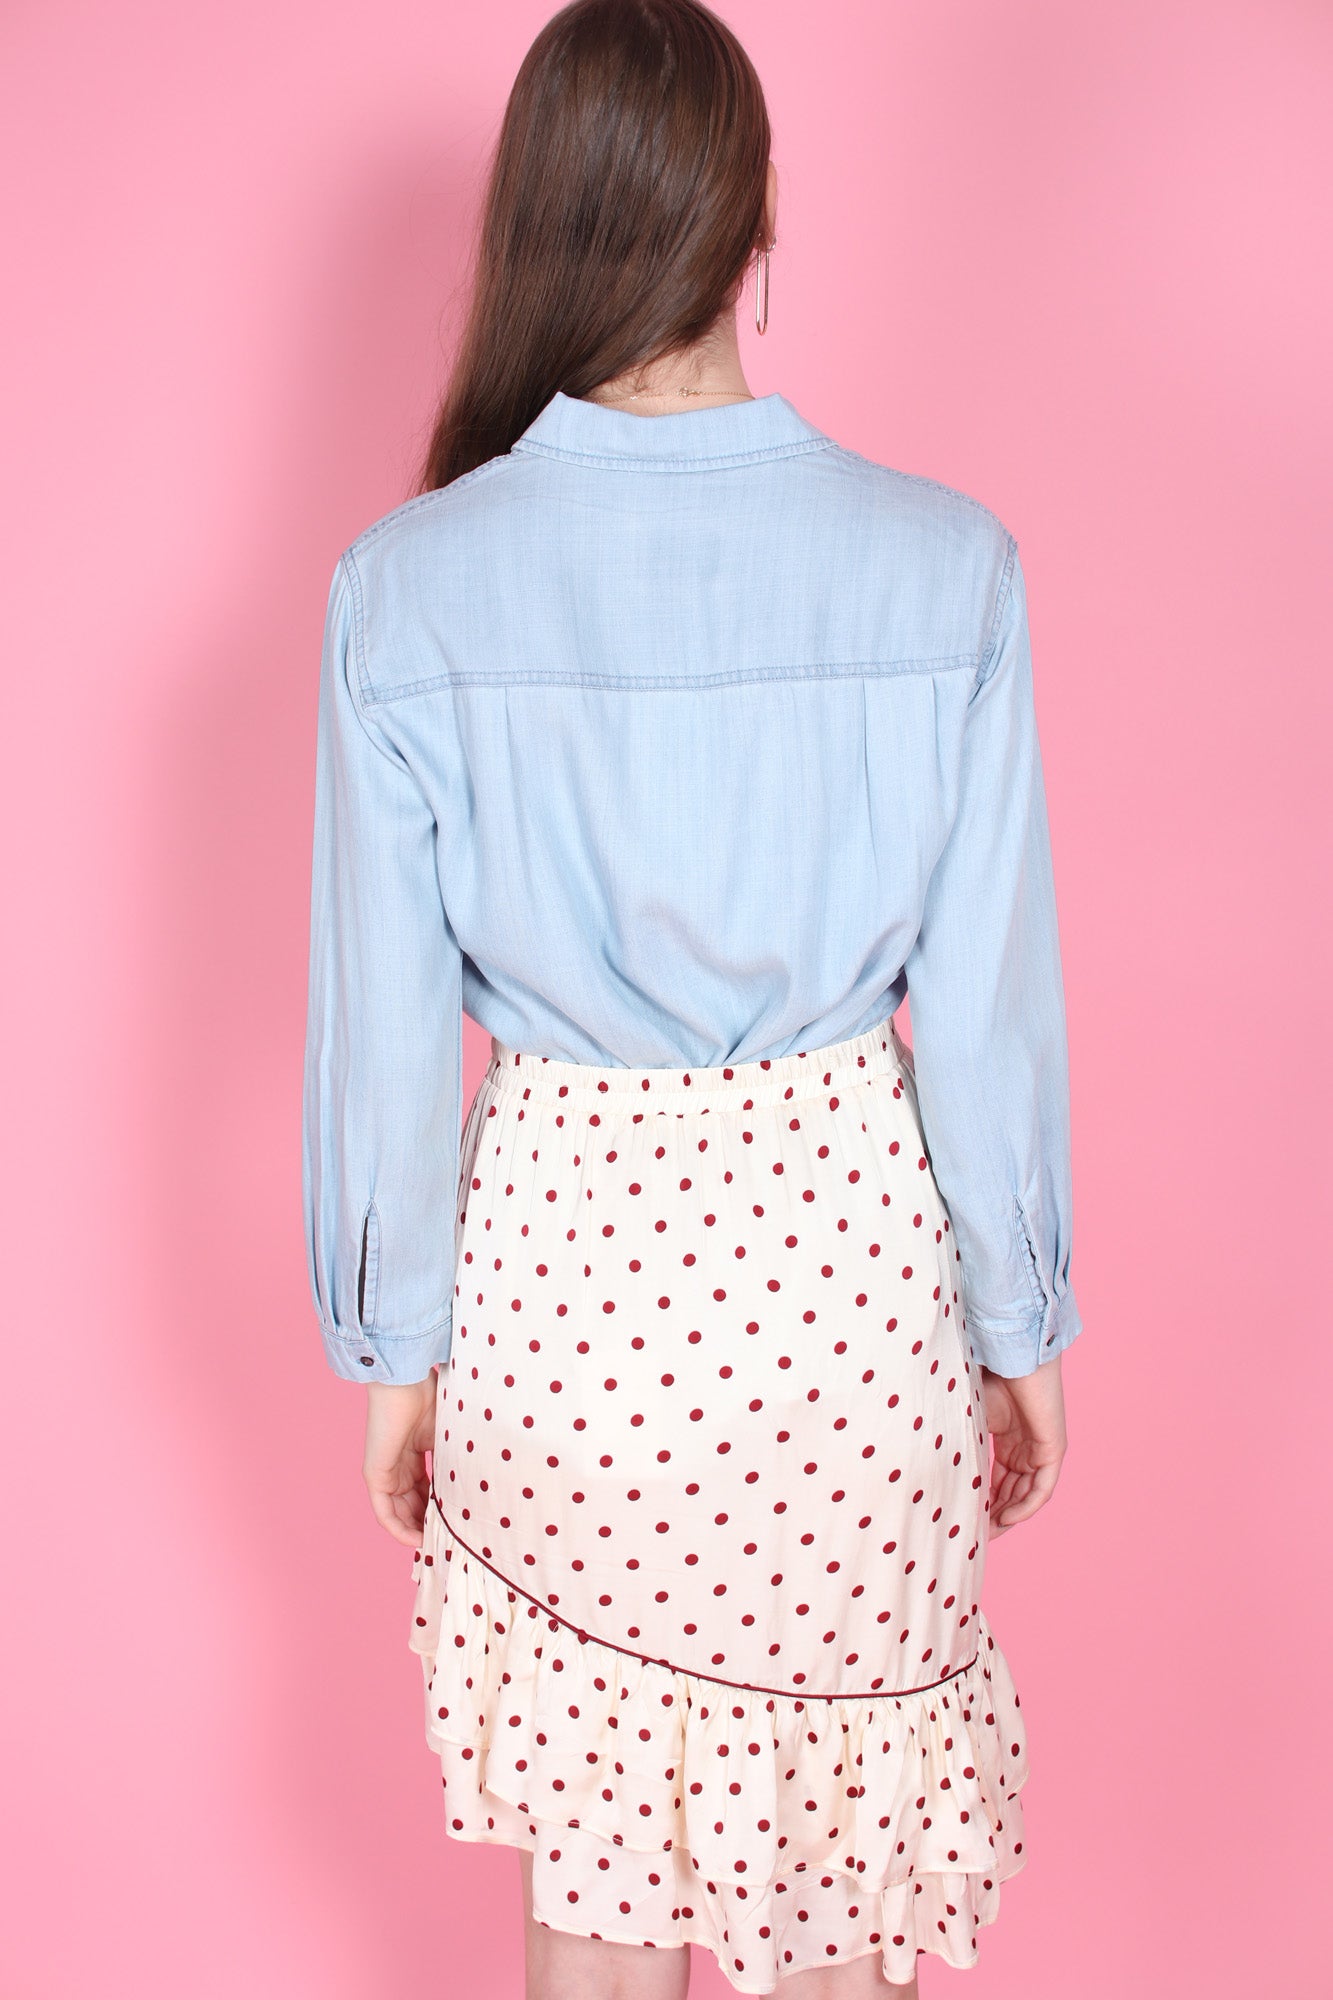 Sophia LS Shirt - Light Blue Denim - Second Female - Bluser & Skjorter - VILLOID.no